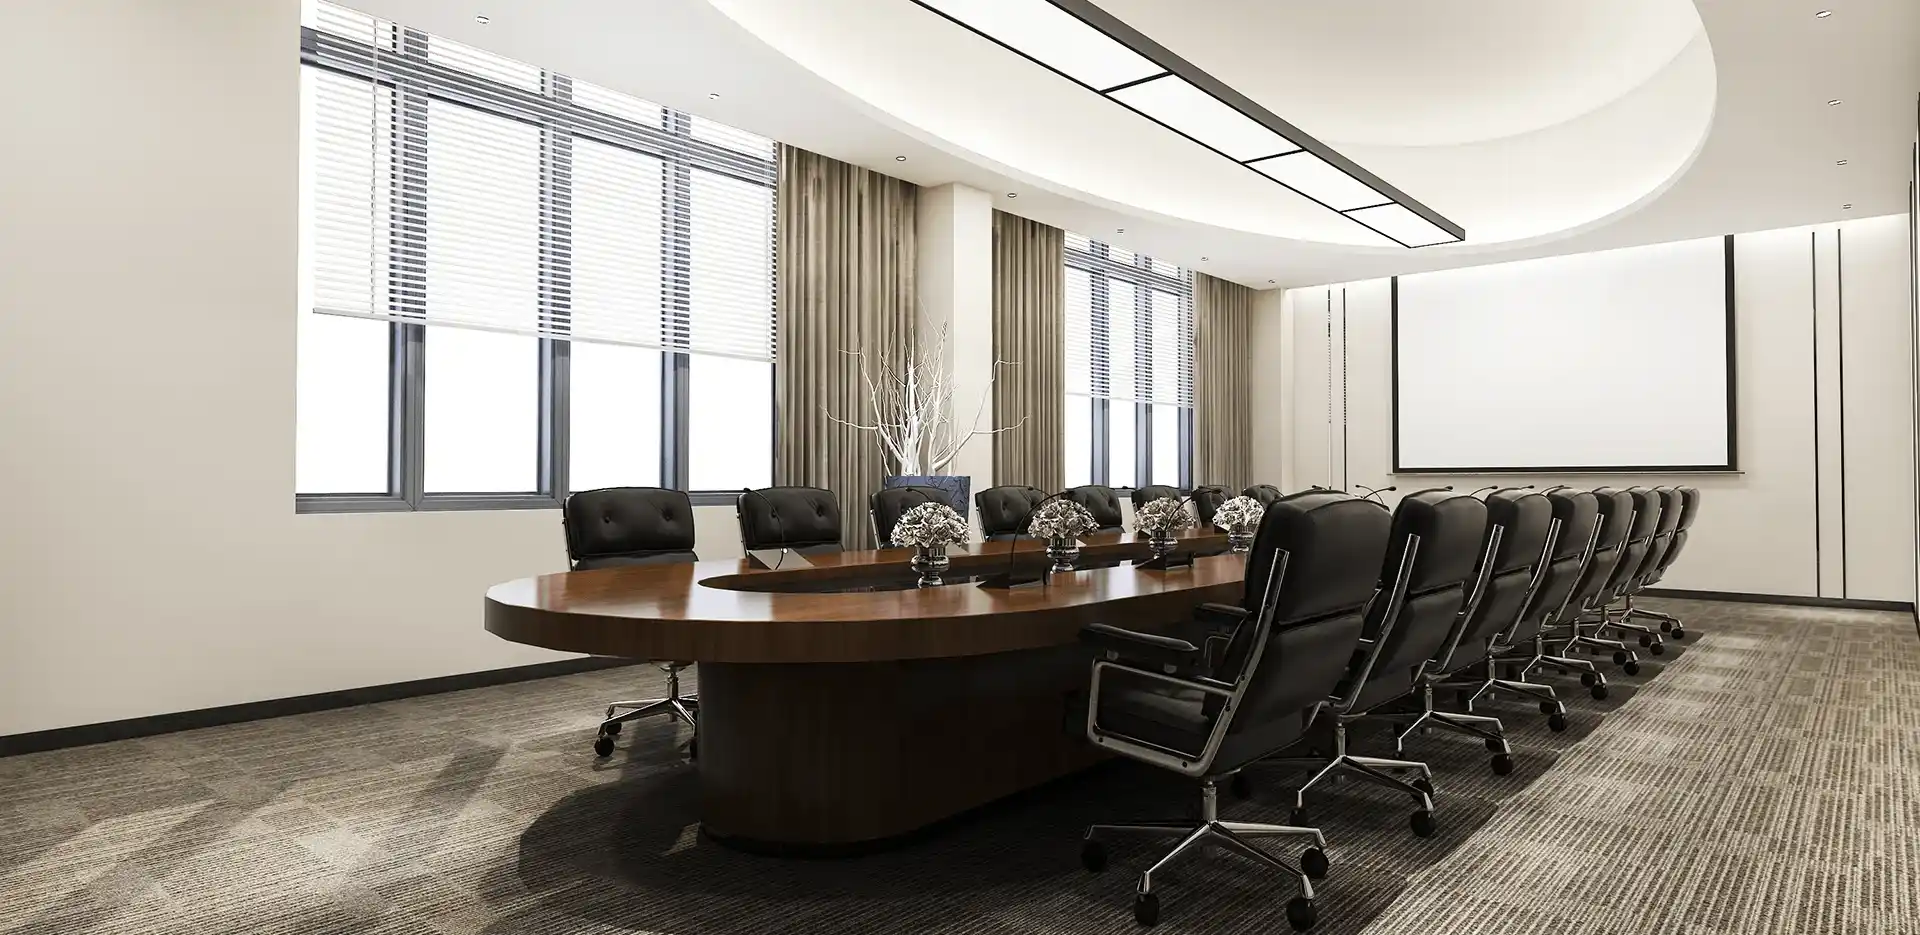 Μια εταιρική αίθουσα συνεδριάσεων με μεγάλο τραπέζι και πολλές καρέκλες.